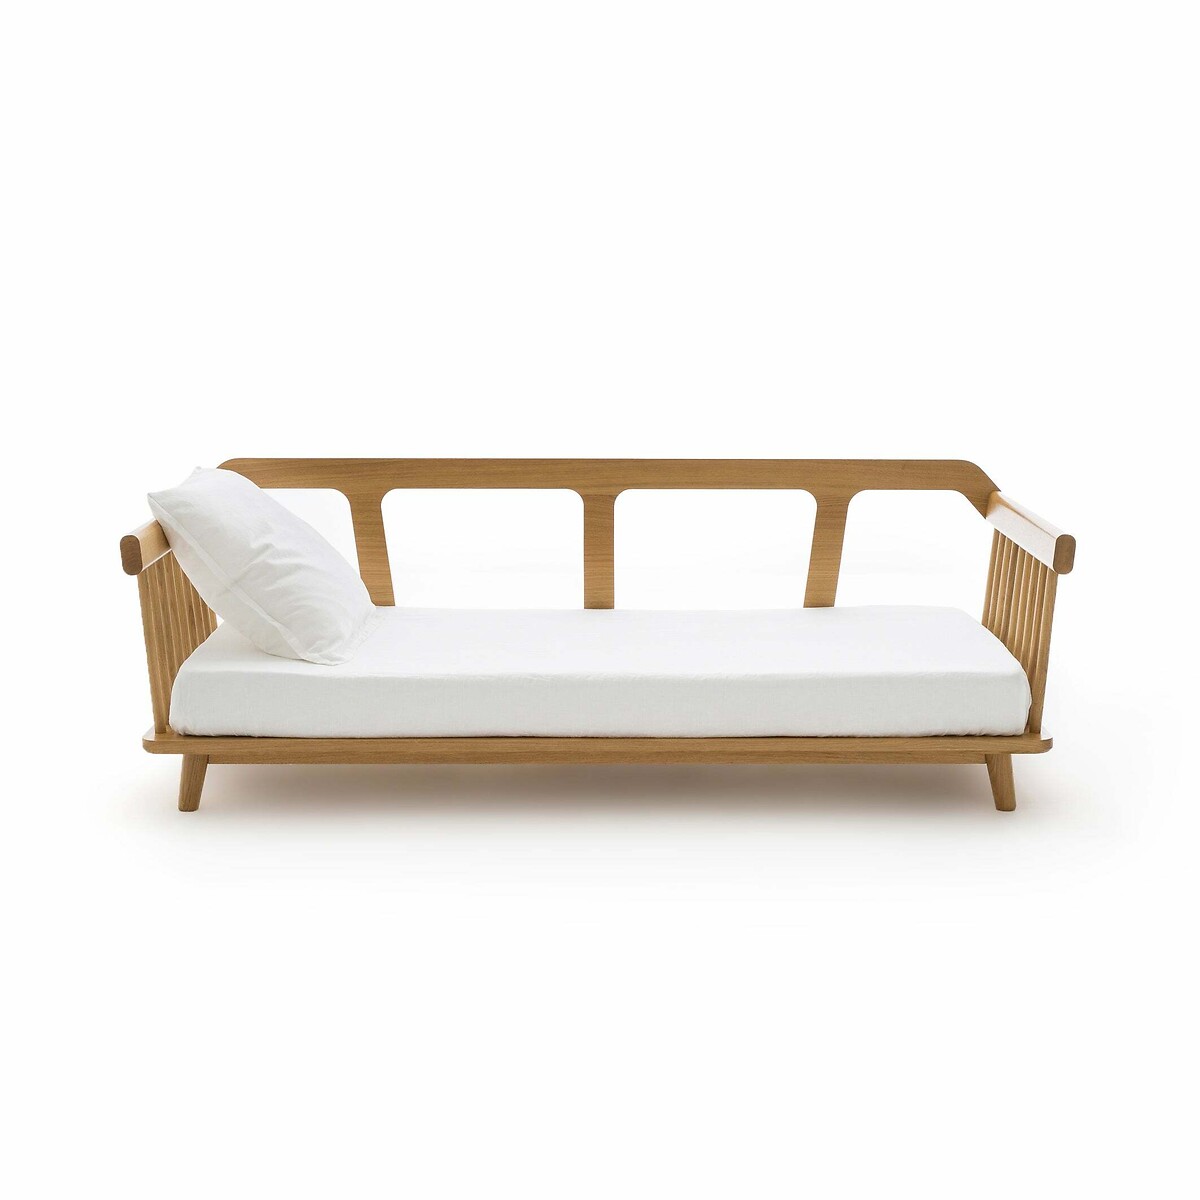 Кровать-банкетка Jungling дизайн Э Галлины 70 x 140 см каштановый